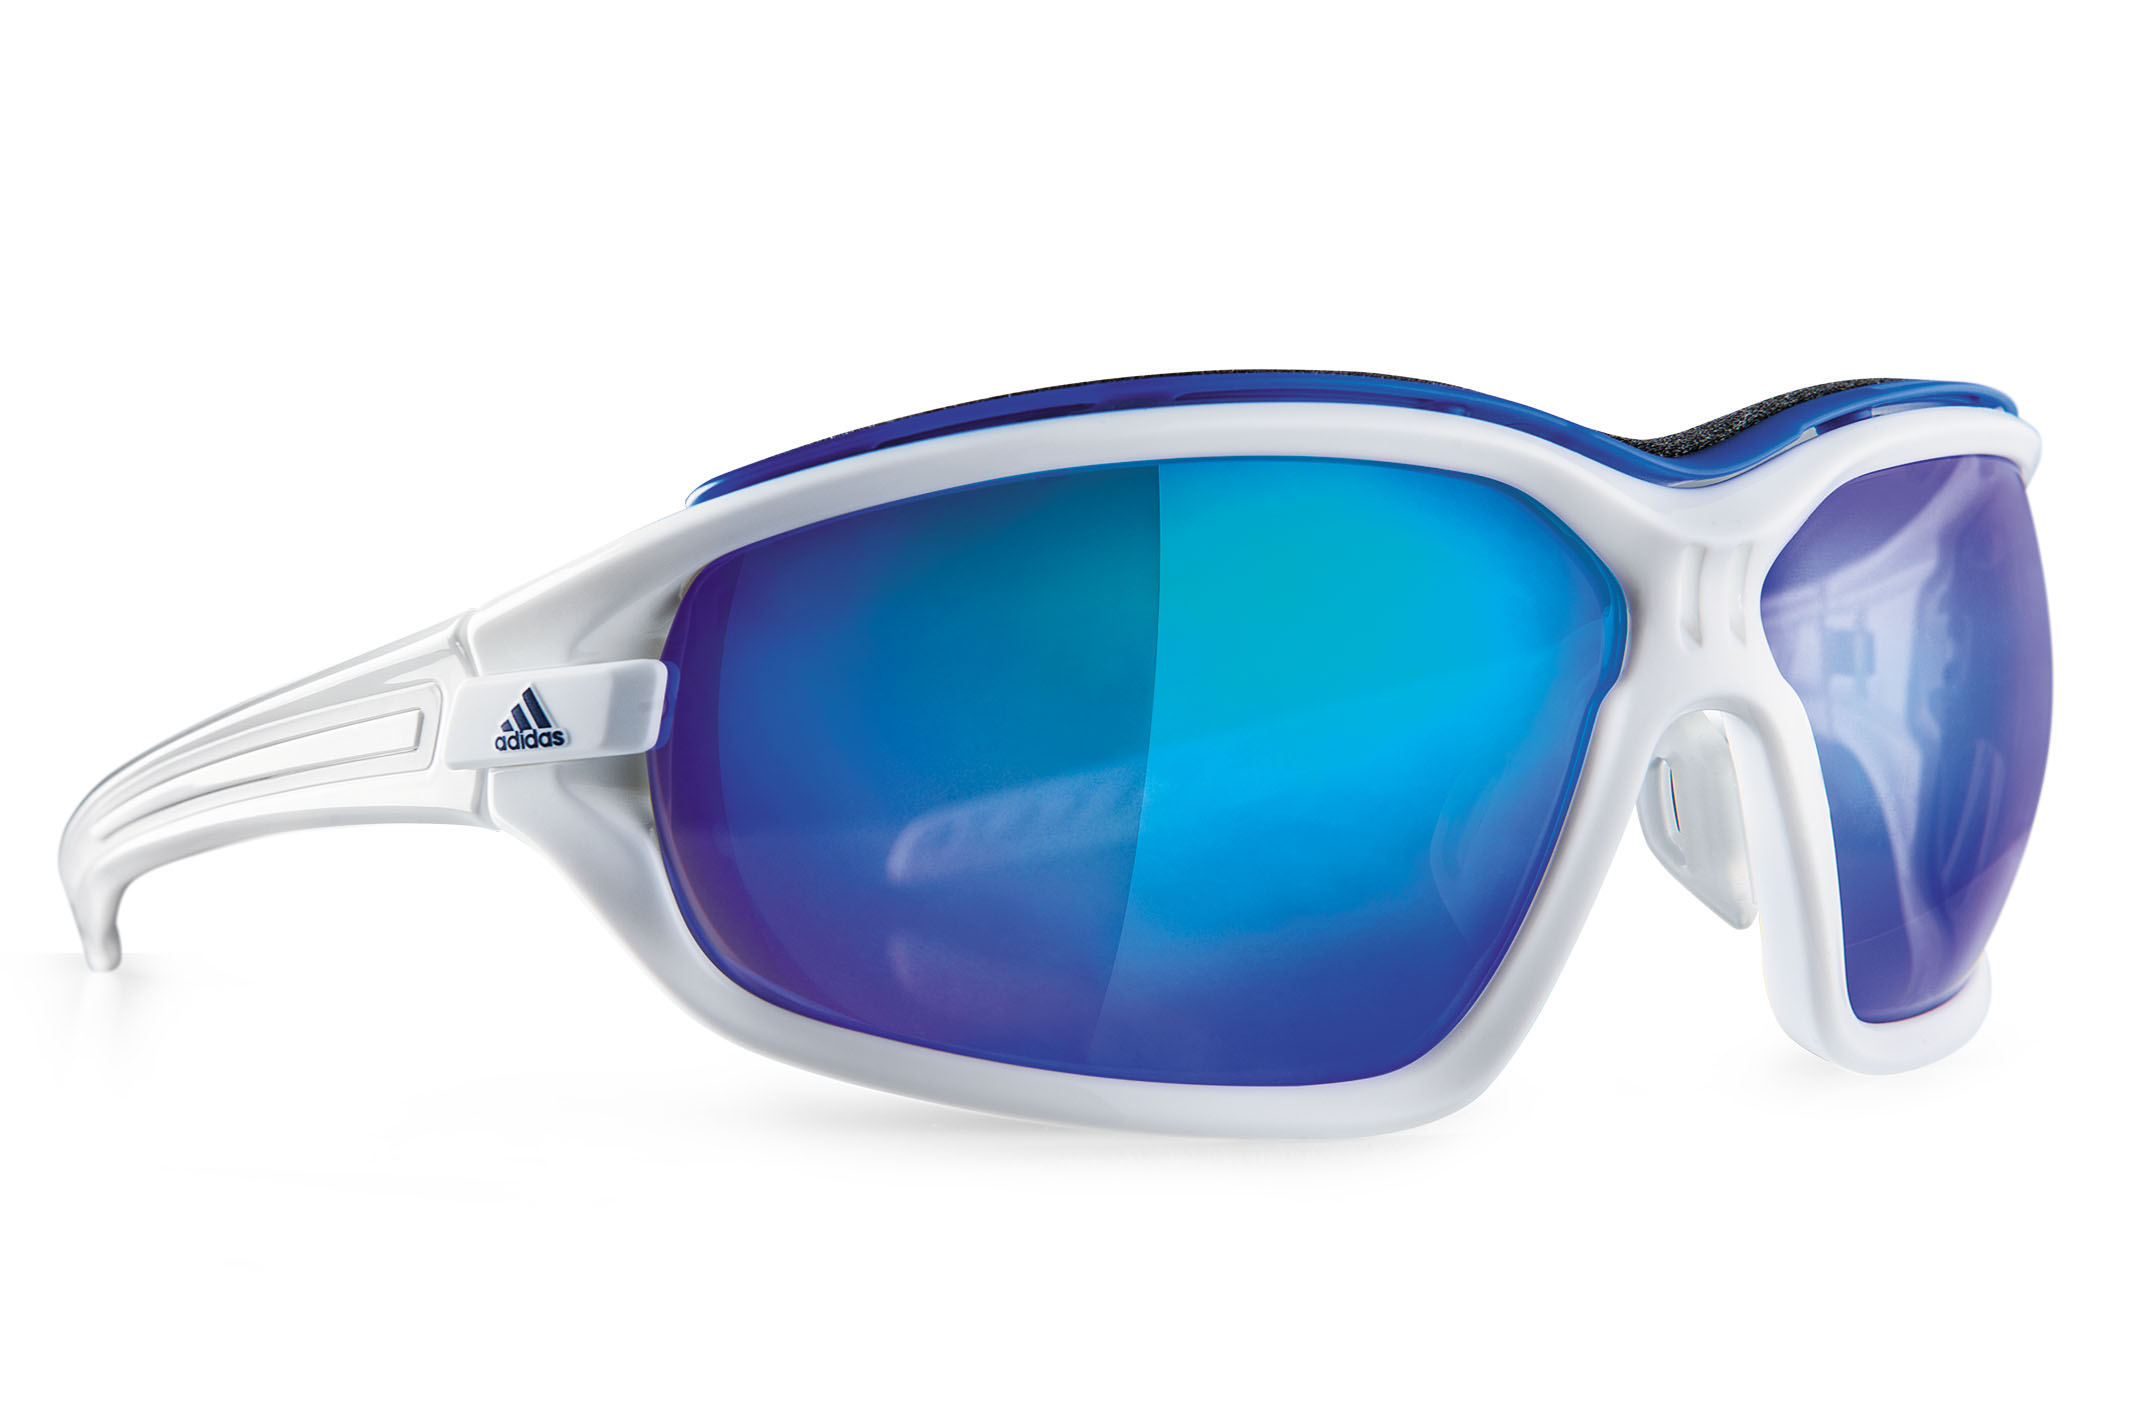 Sluier Interpersoonlijk dauw Neue Sportbrille von Adidas: Evil Eye Evo